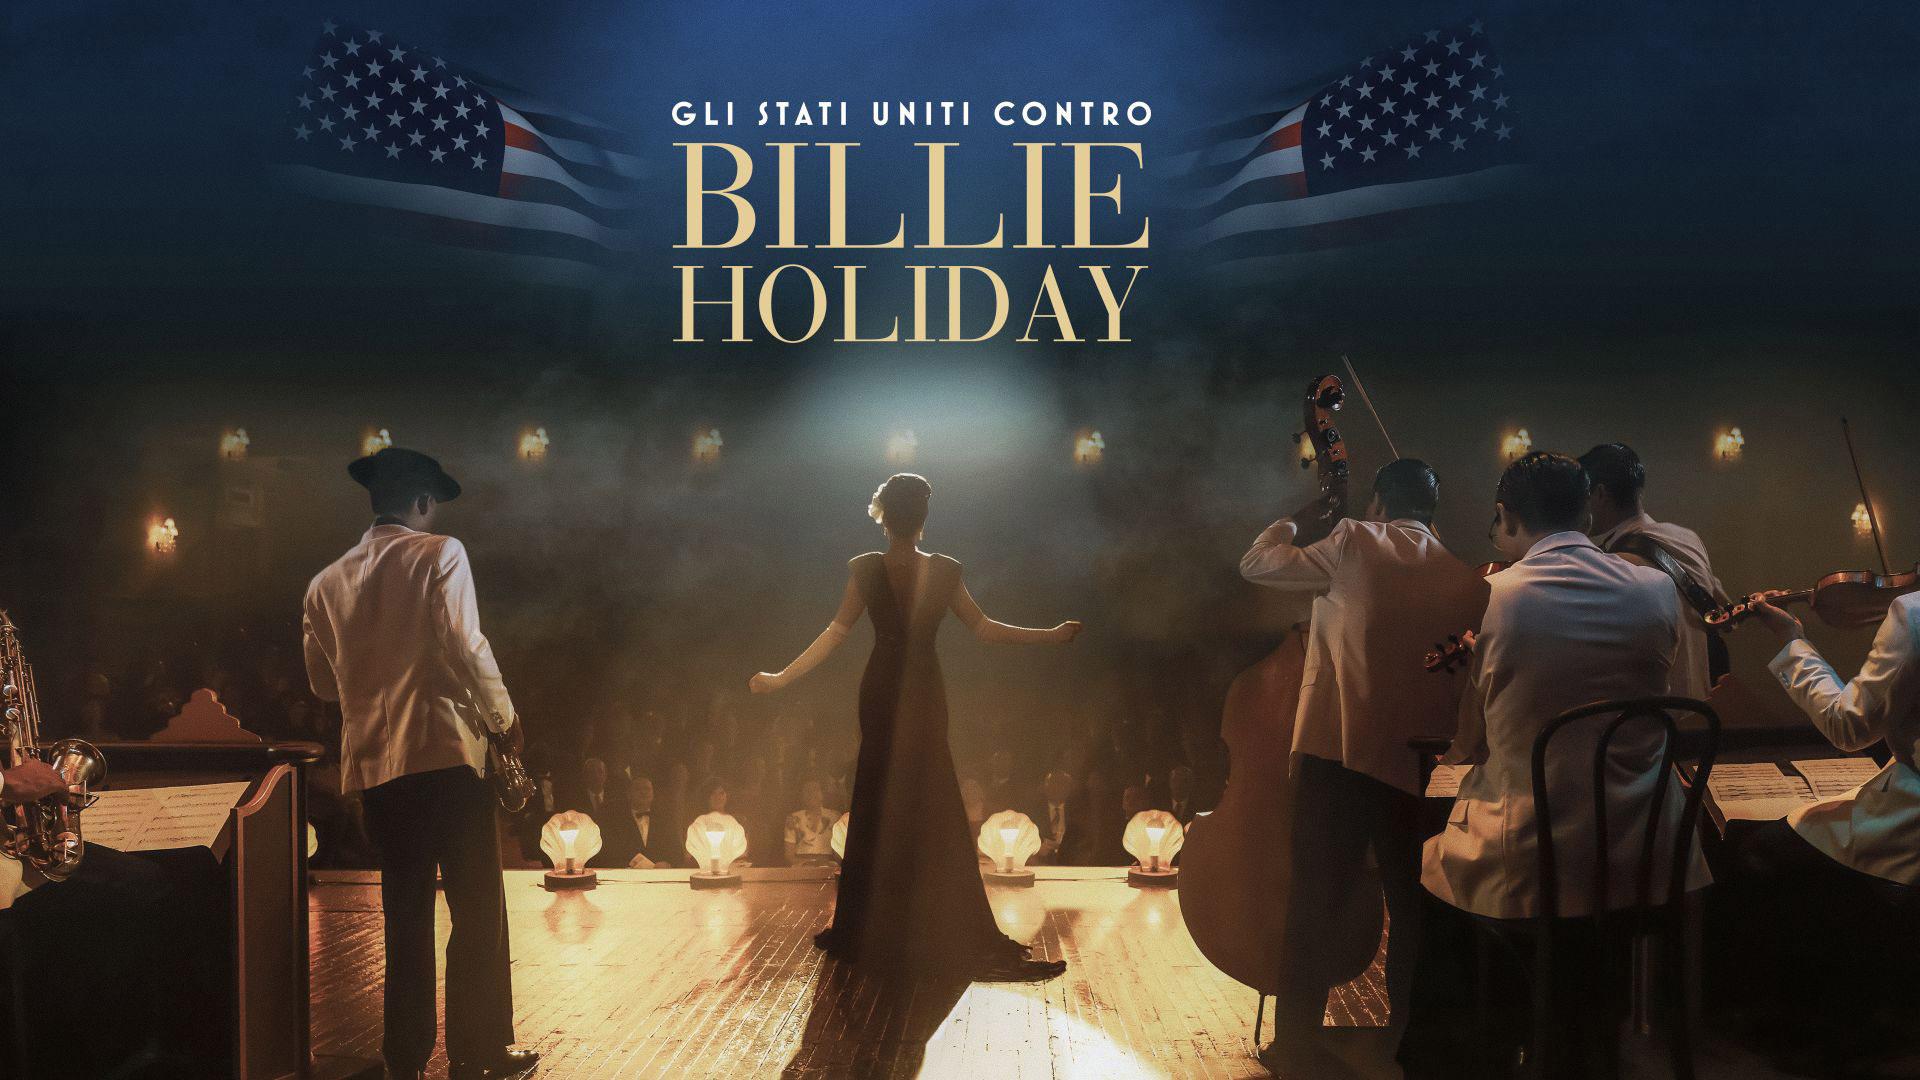 Gli Stati Uniti contro Billie Holiday - Poster orizzontale